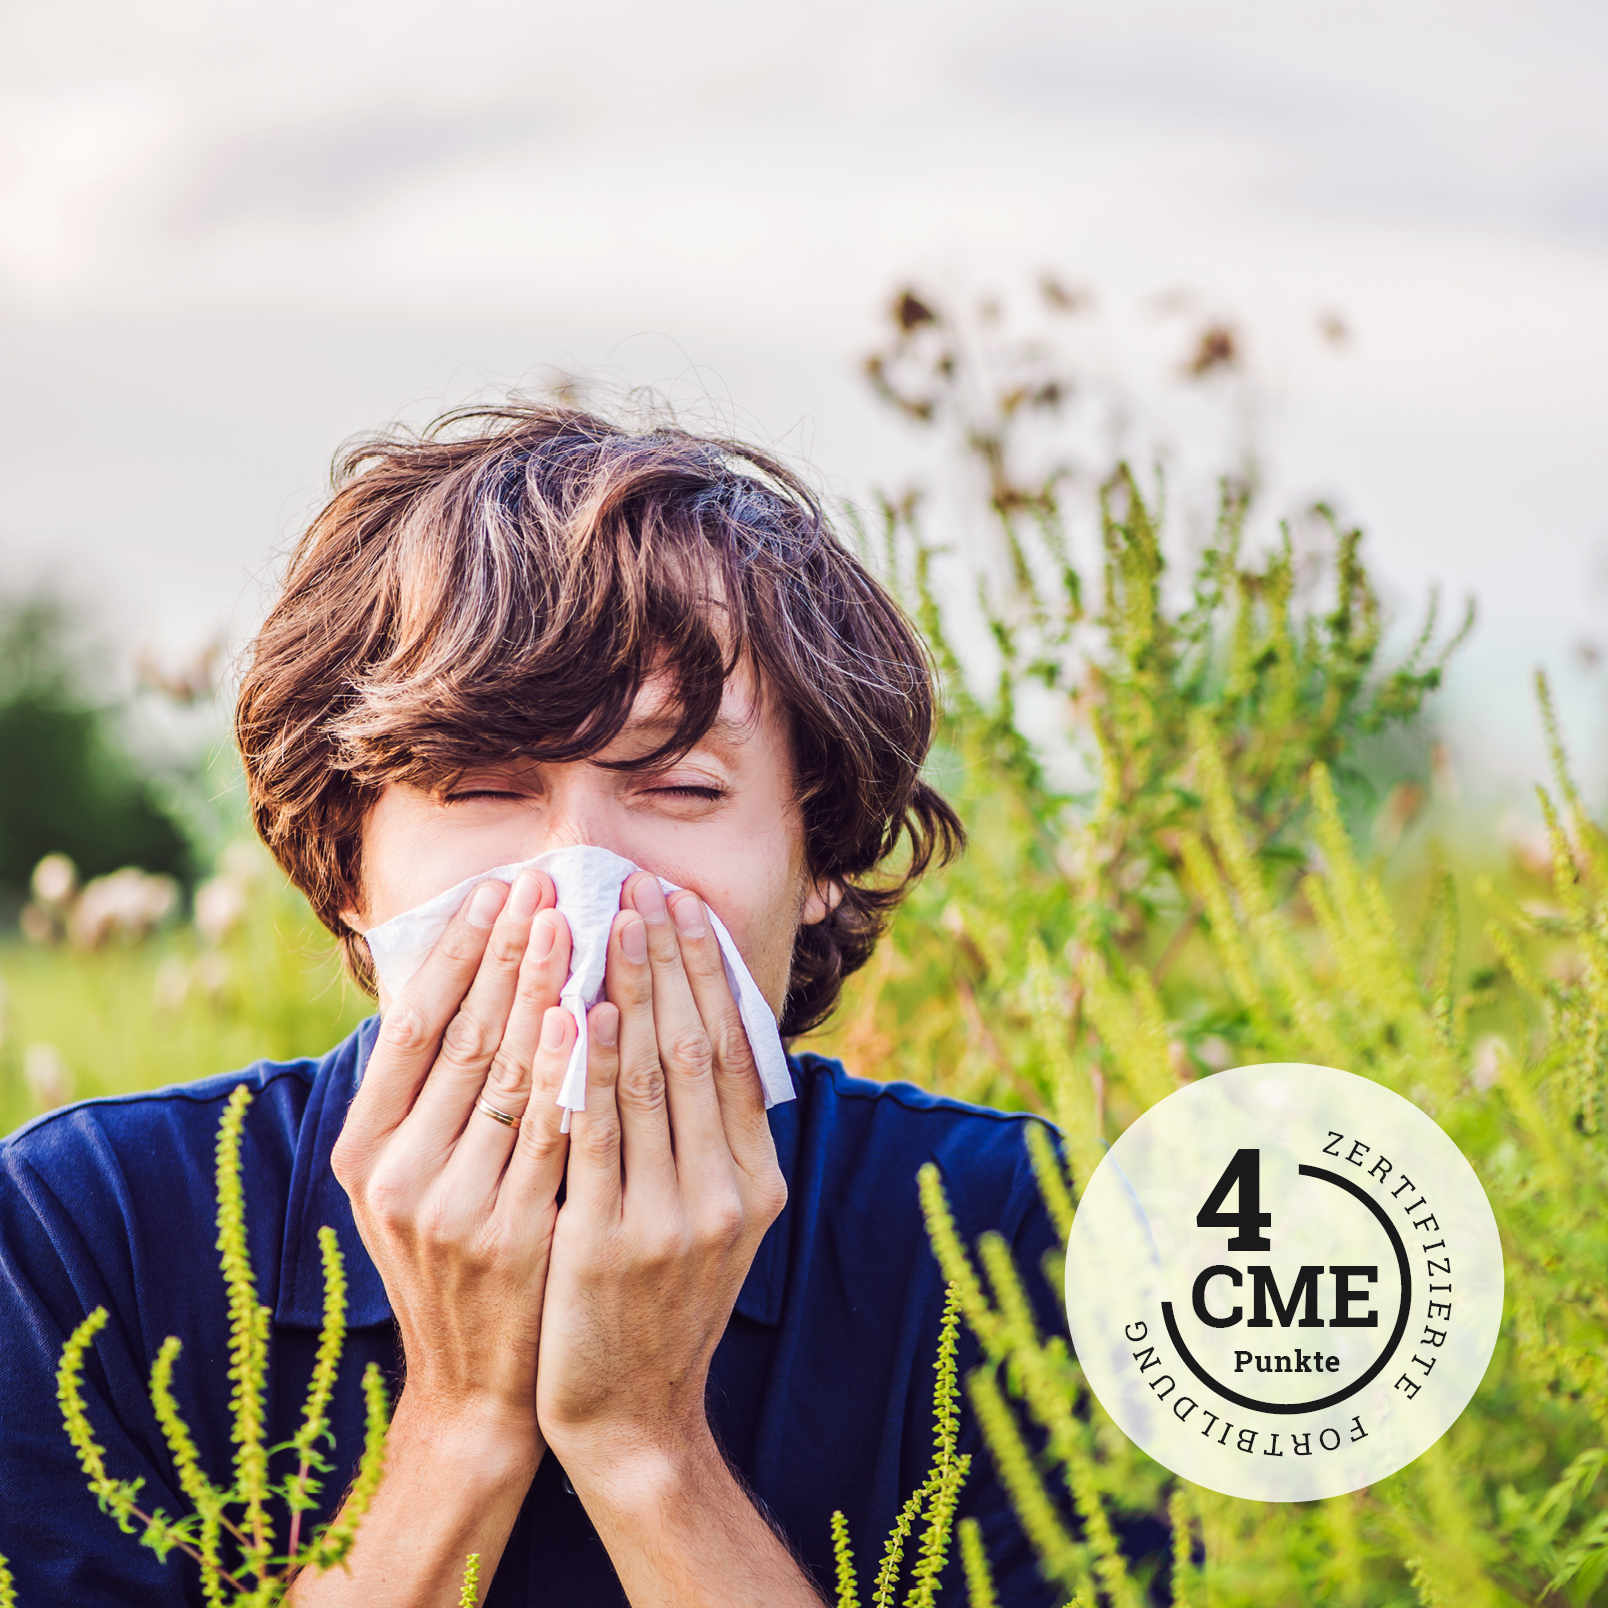 CME zu Allergen-Immuntherapie bei Gräsern und Baumpollen